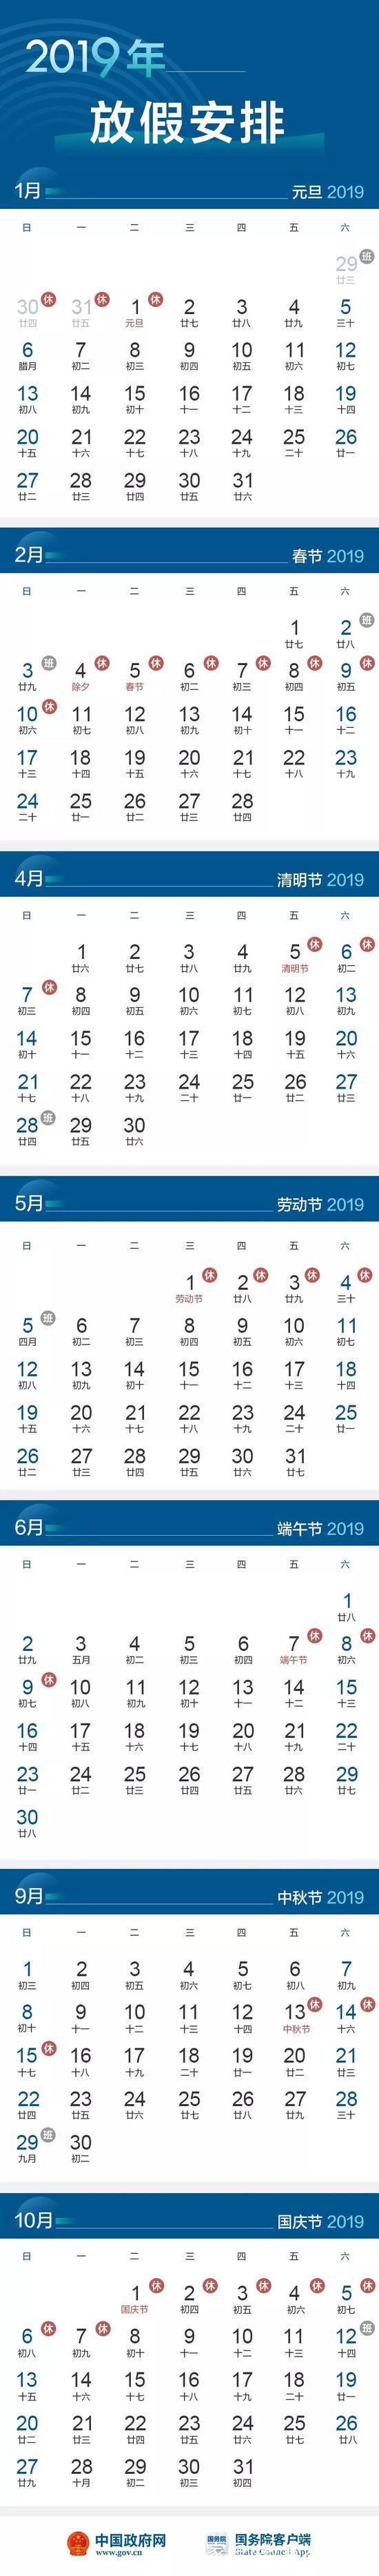 2019劳动节假期调整内容介绍